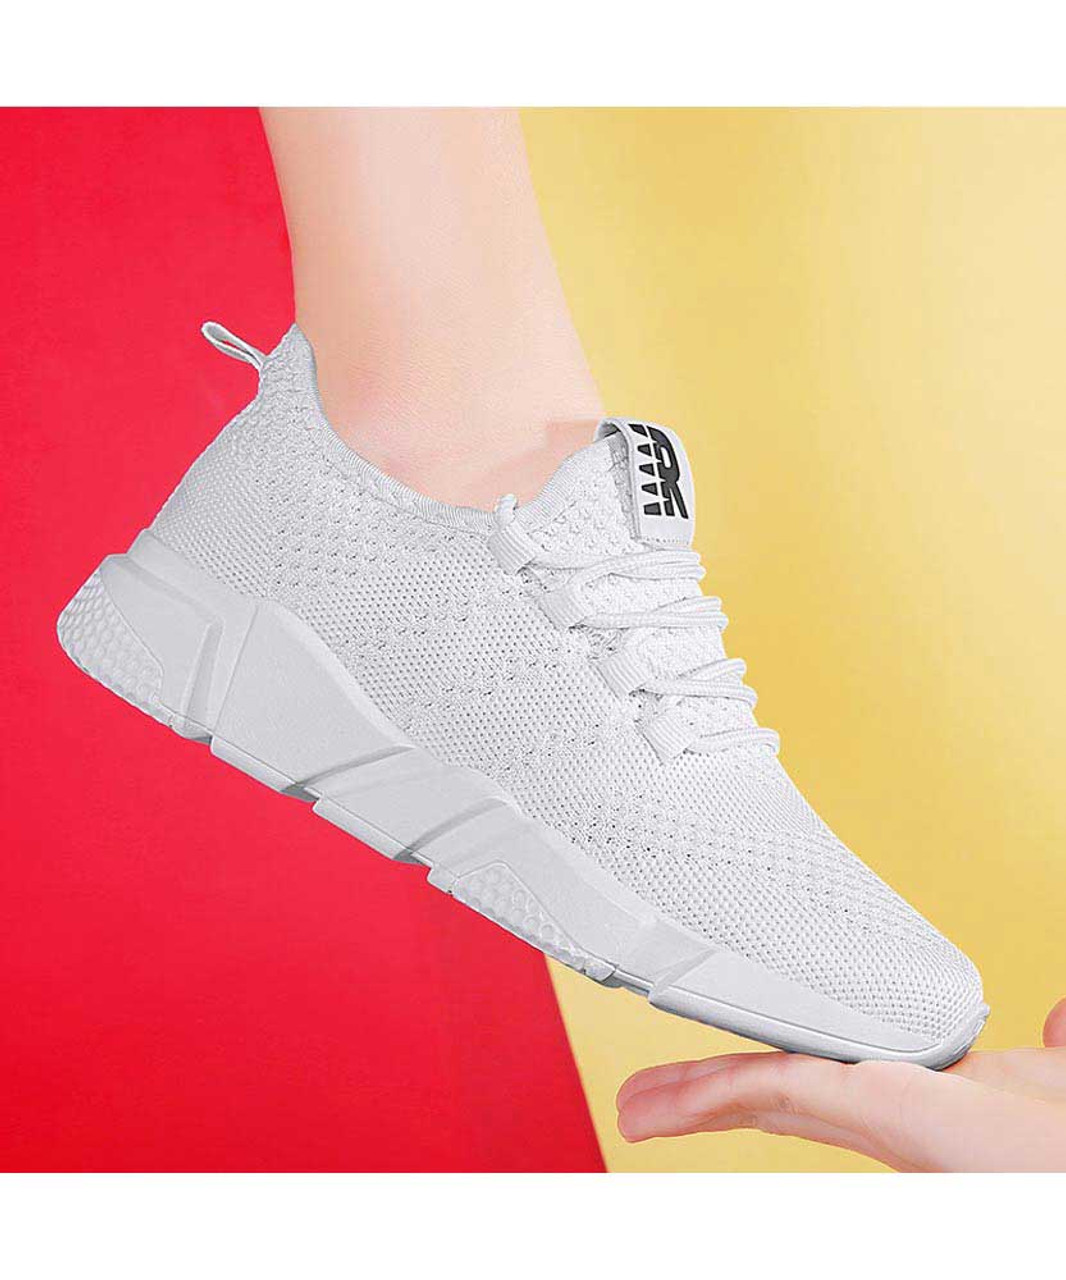 White flyknit R label pattern shoe sneaker | Womens sneakers shoes ...